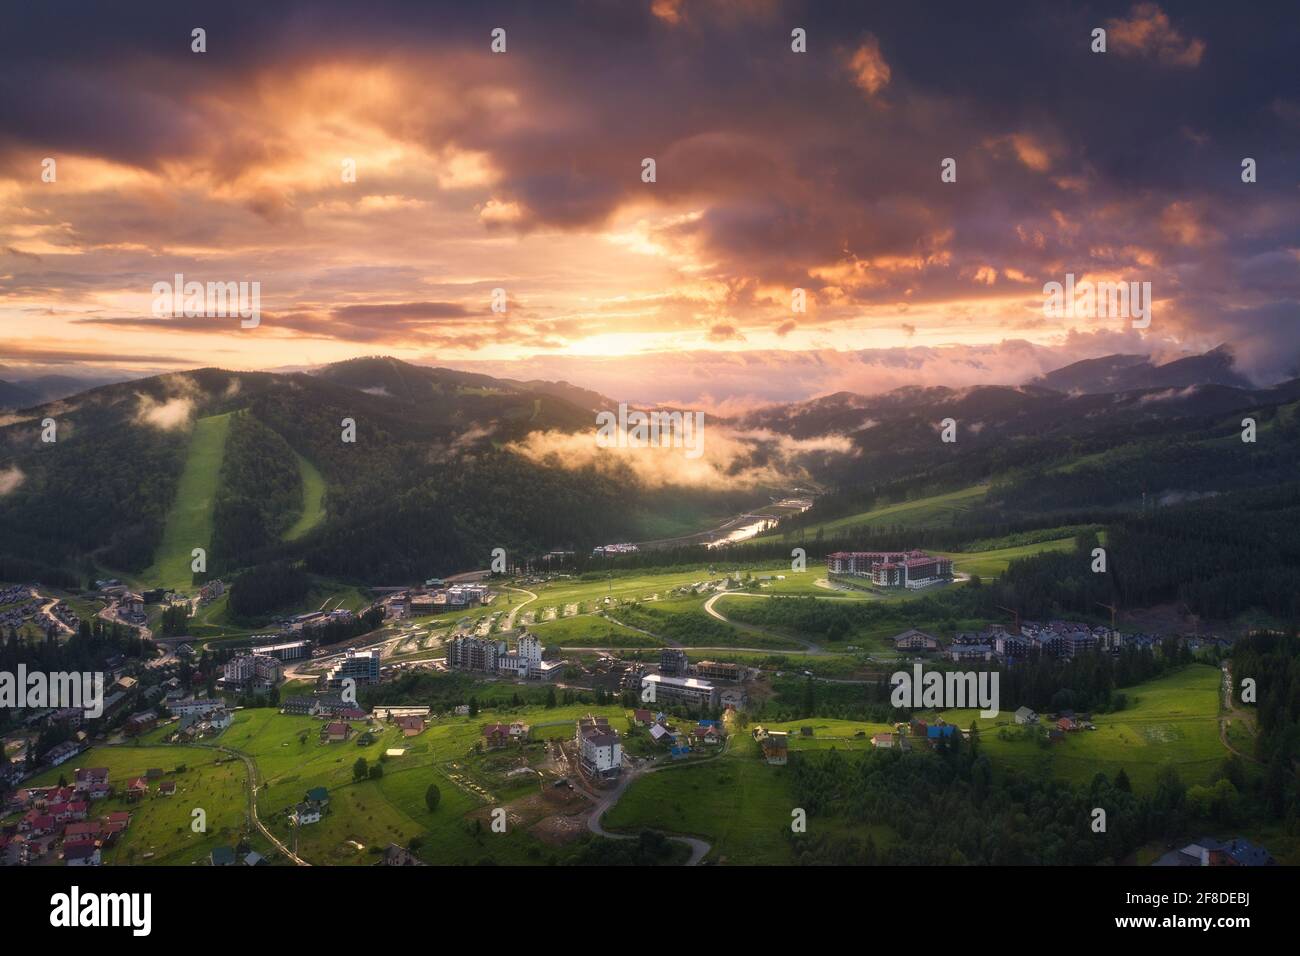 Luftaufnahme des schönen Dorfes in den Karpaten bei Sonnenuntergang im Sommer. Bunte Landschaft mit grünen Wiesen, Häusern, Bäumen, dramatischem Himmel. Oben Stockfoto